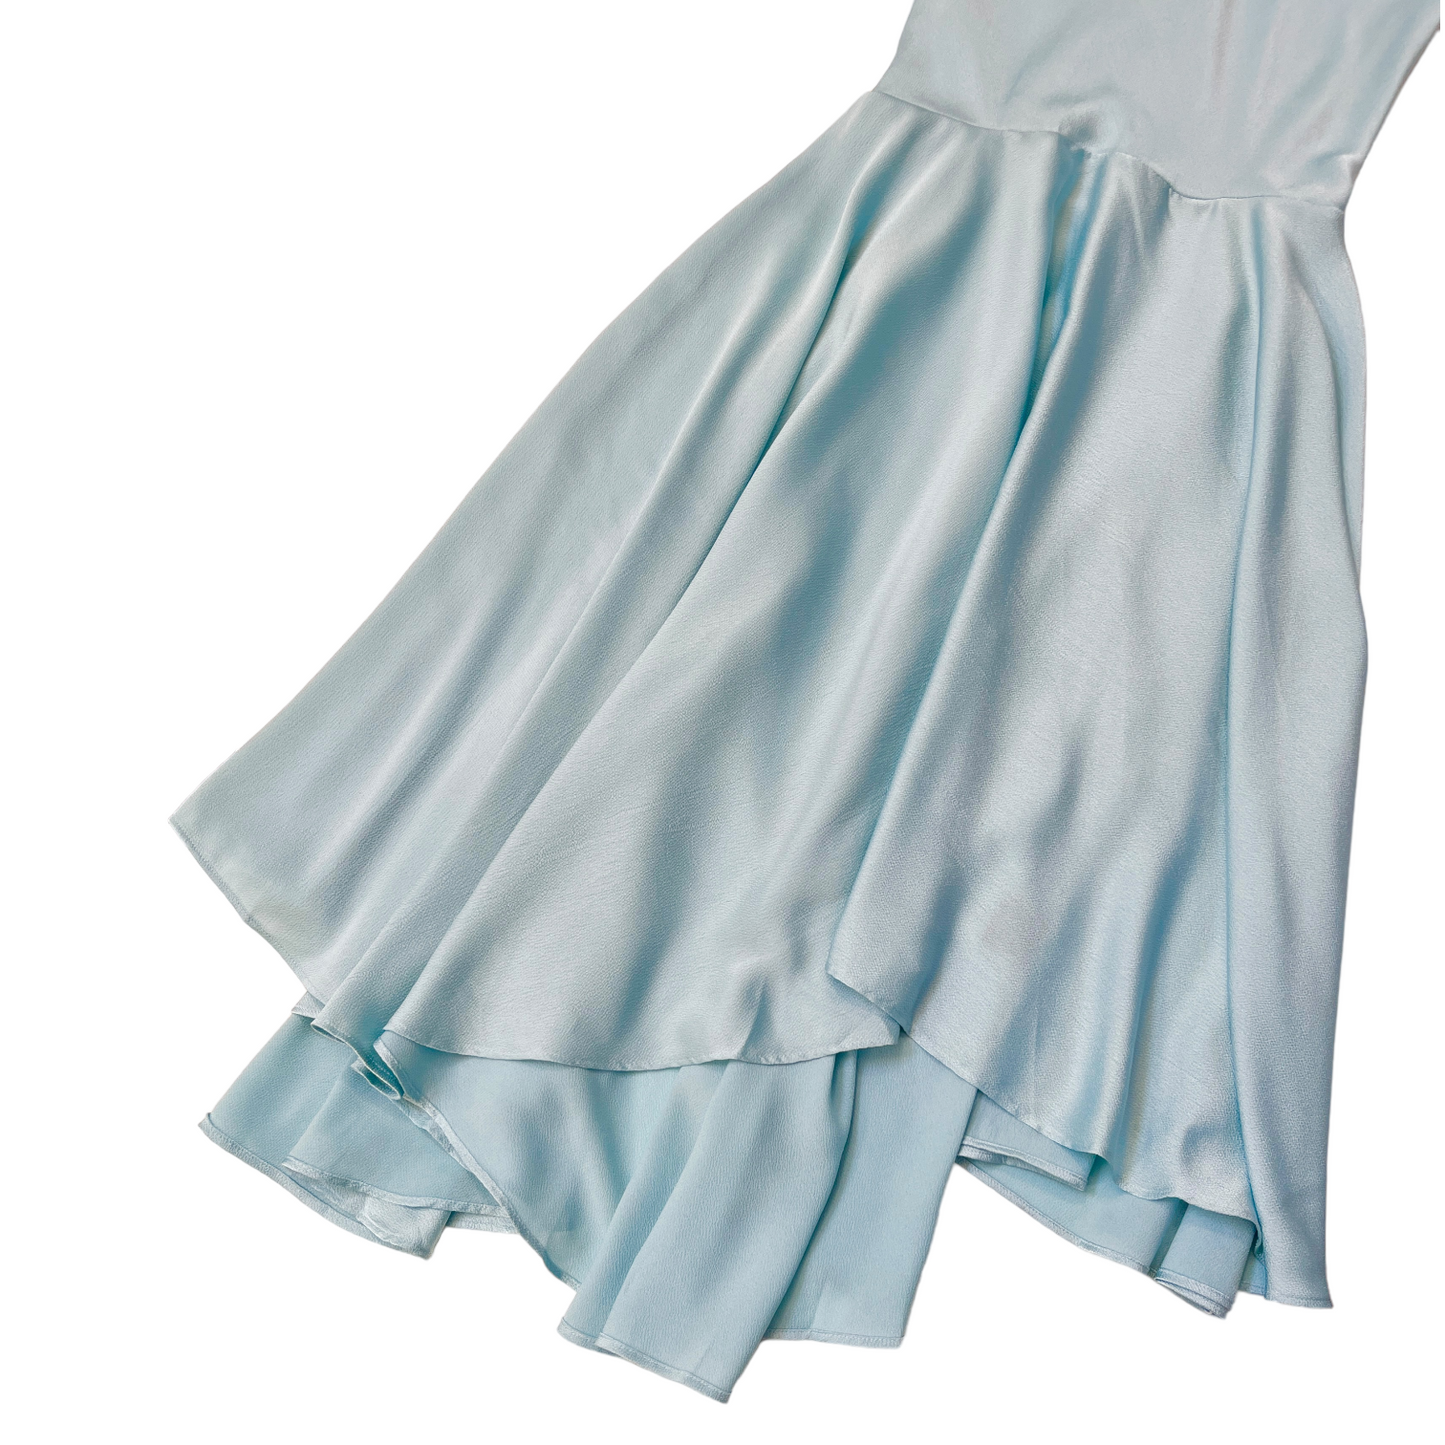 Michael Costello x REVOLVE Brianne Maxi Dress in Light Blue